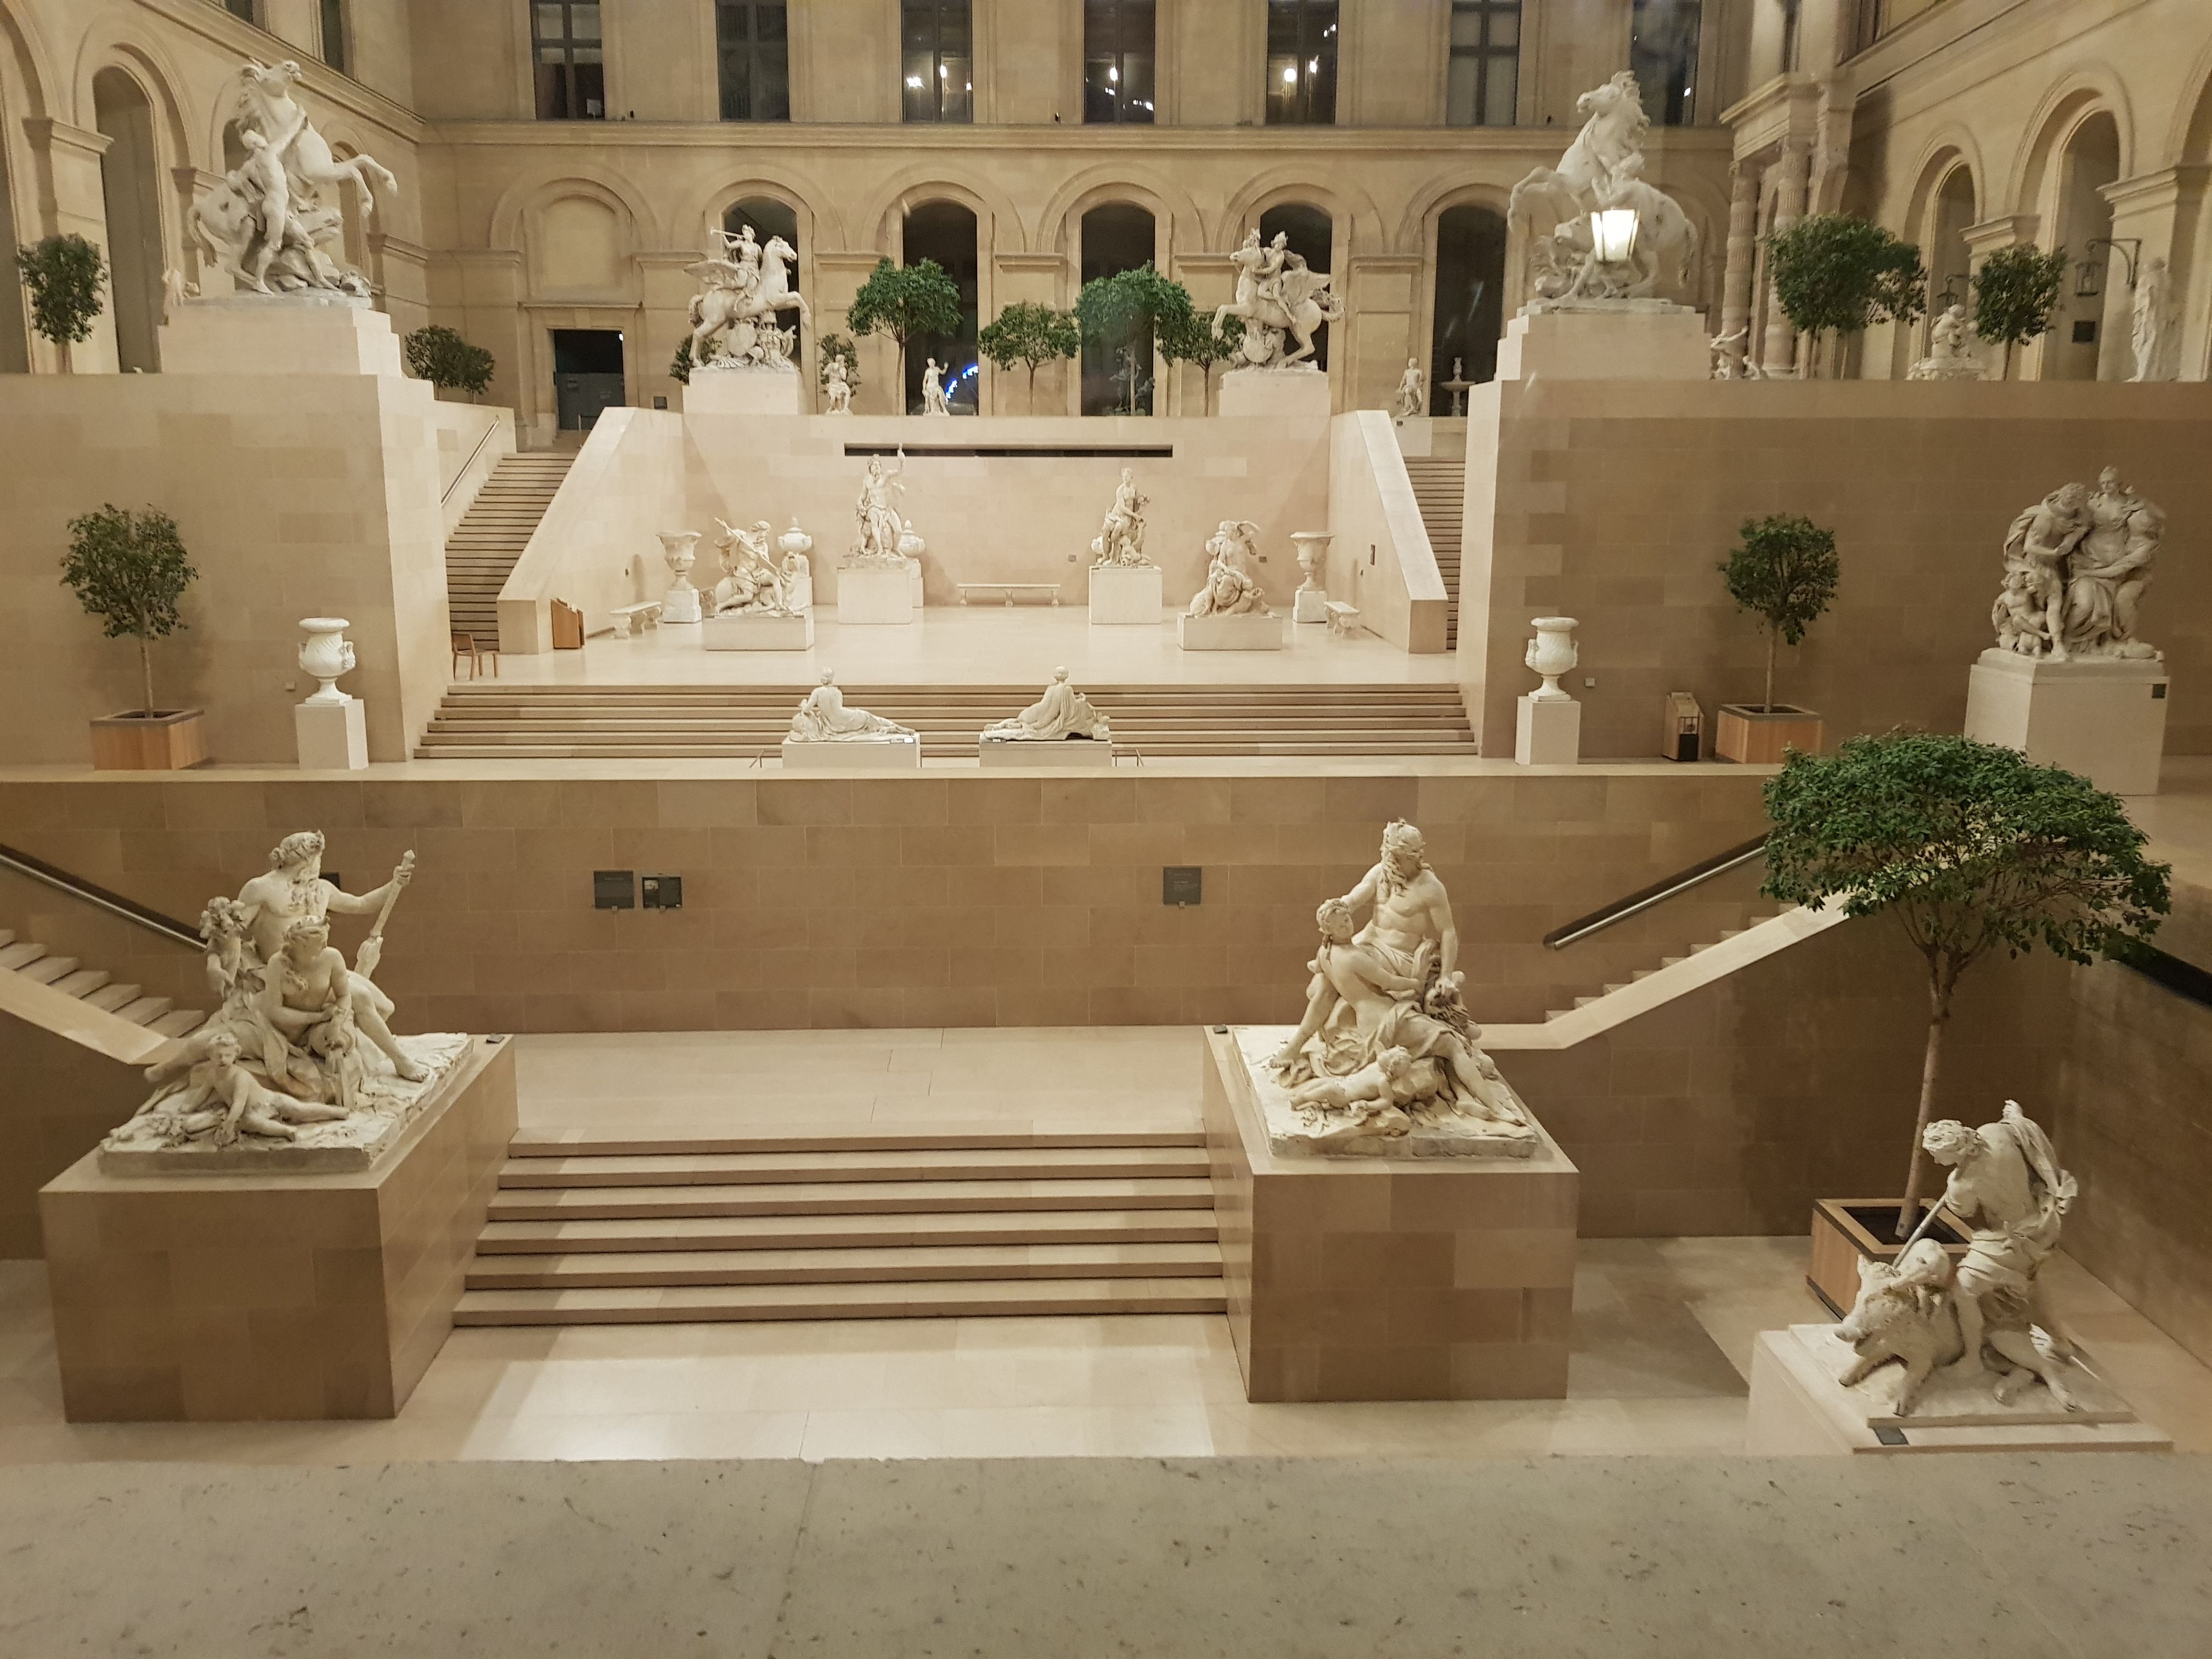 Louvre inside Paris France Steemit Fredrikaa.jpg